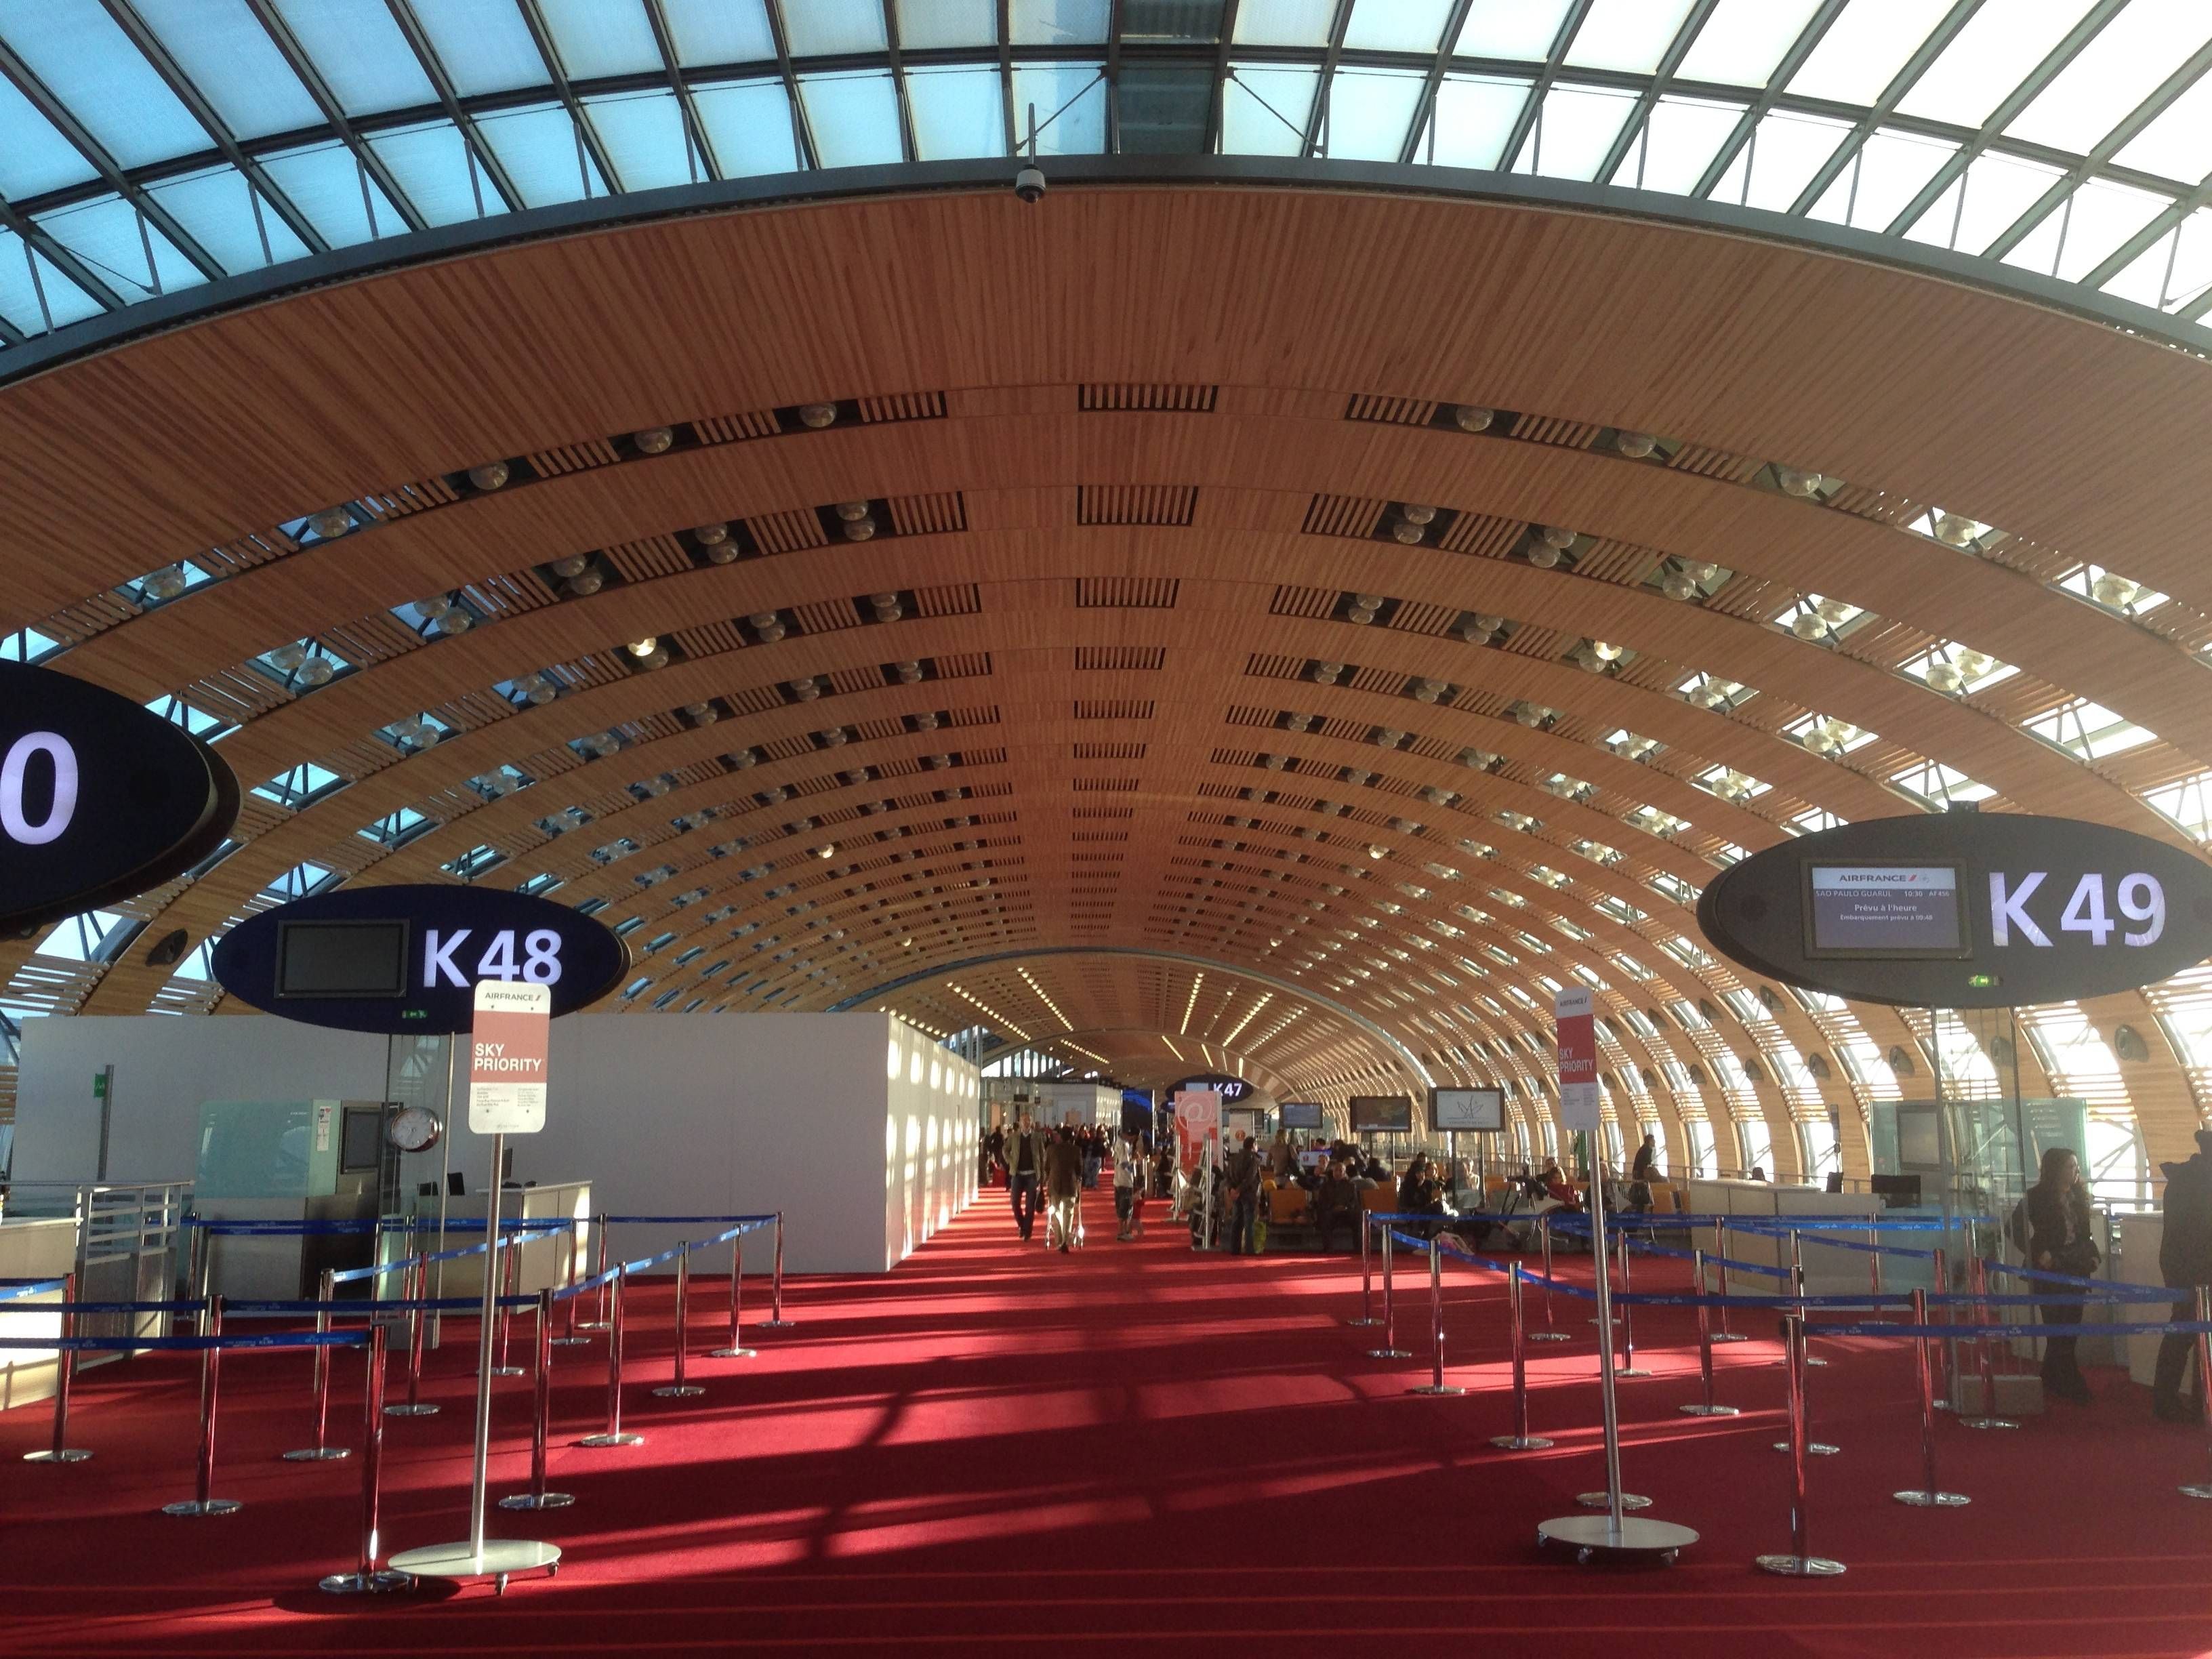 Sala VIP Air France no Aeroporto de Paris (CDG) - Terminal E - Portões K